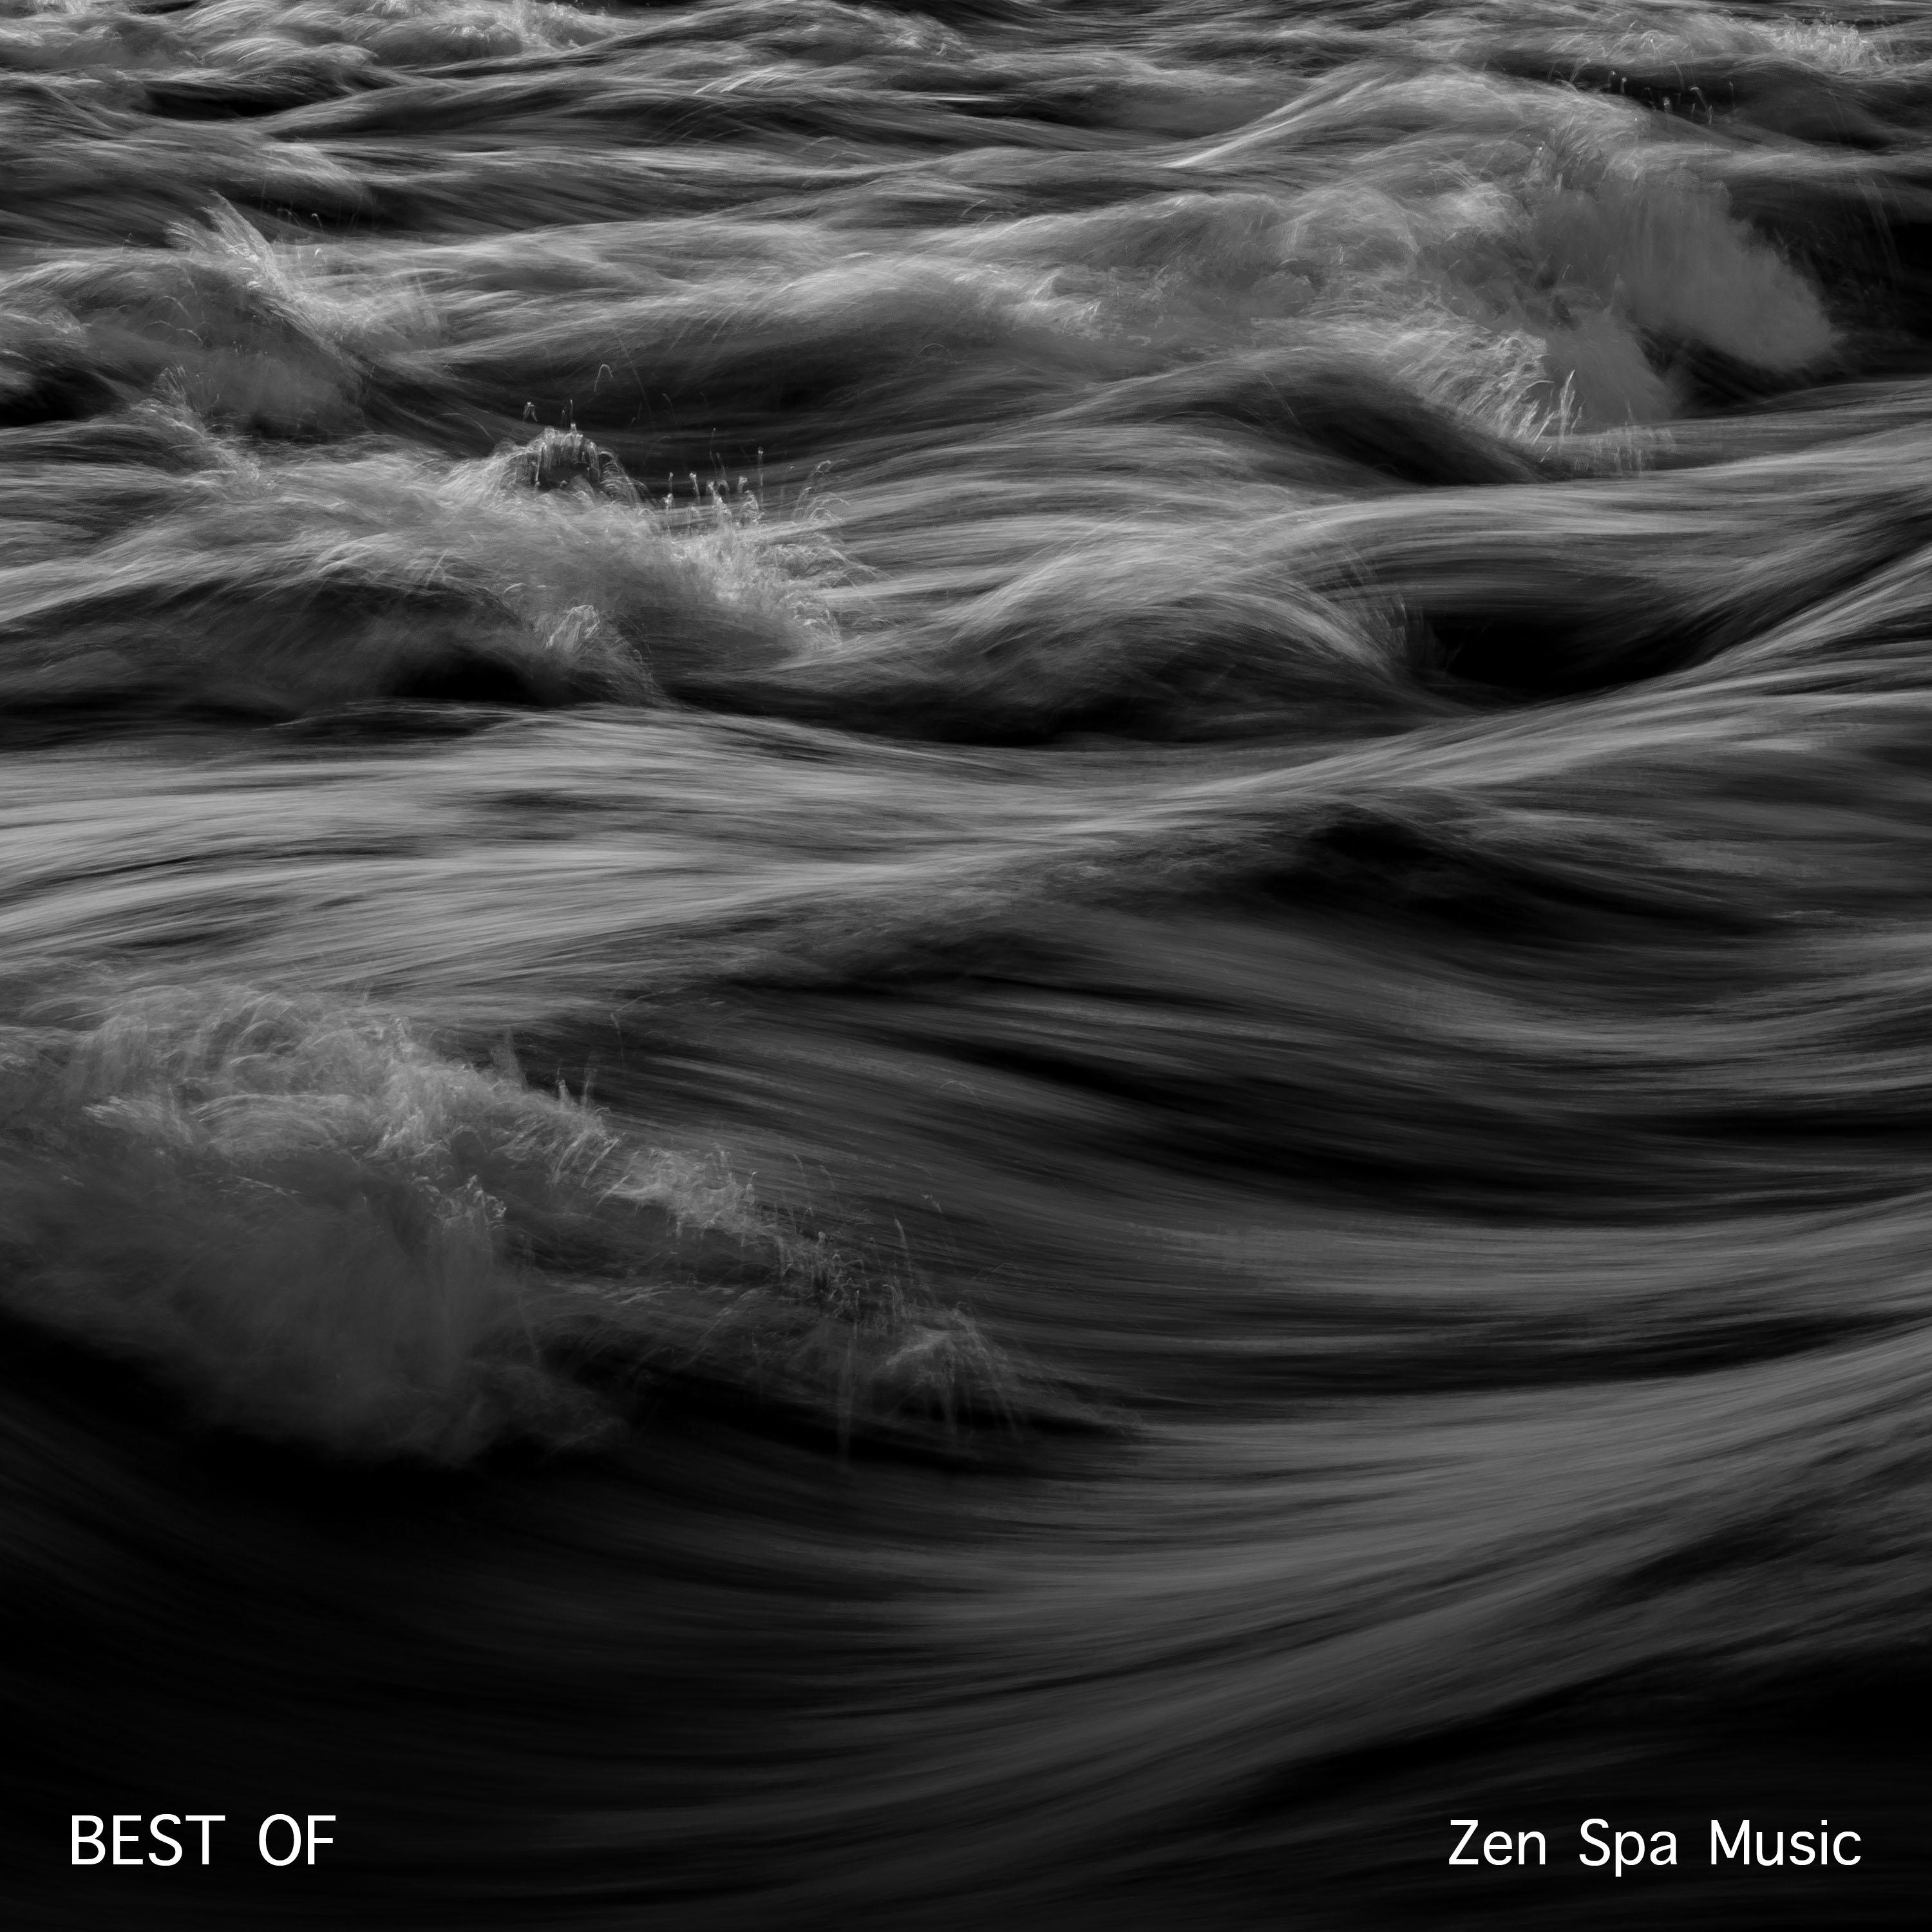 2018 Best of: Zen Spa Music